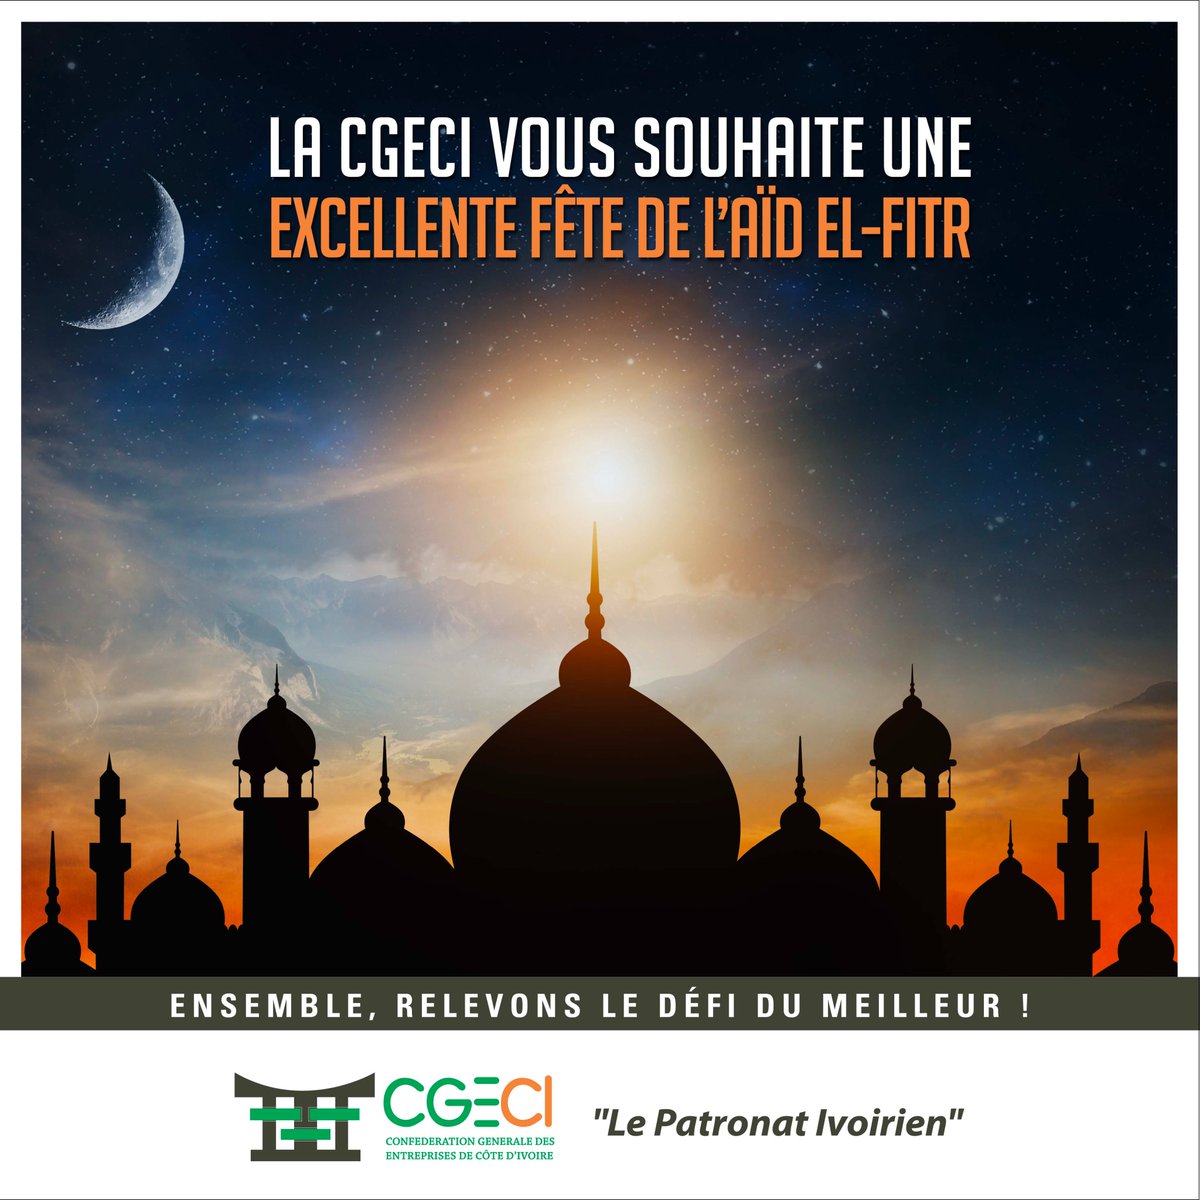 Le Patronat Ivoirien souhaite une bonne fête de l'AÏD EL-FITR à toute la communauté musulmane.